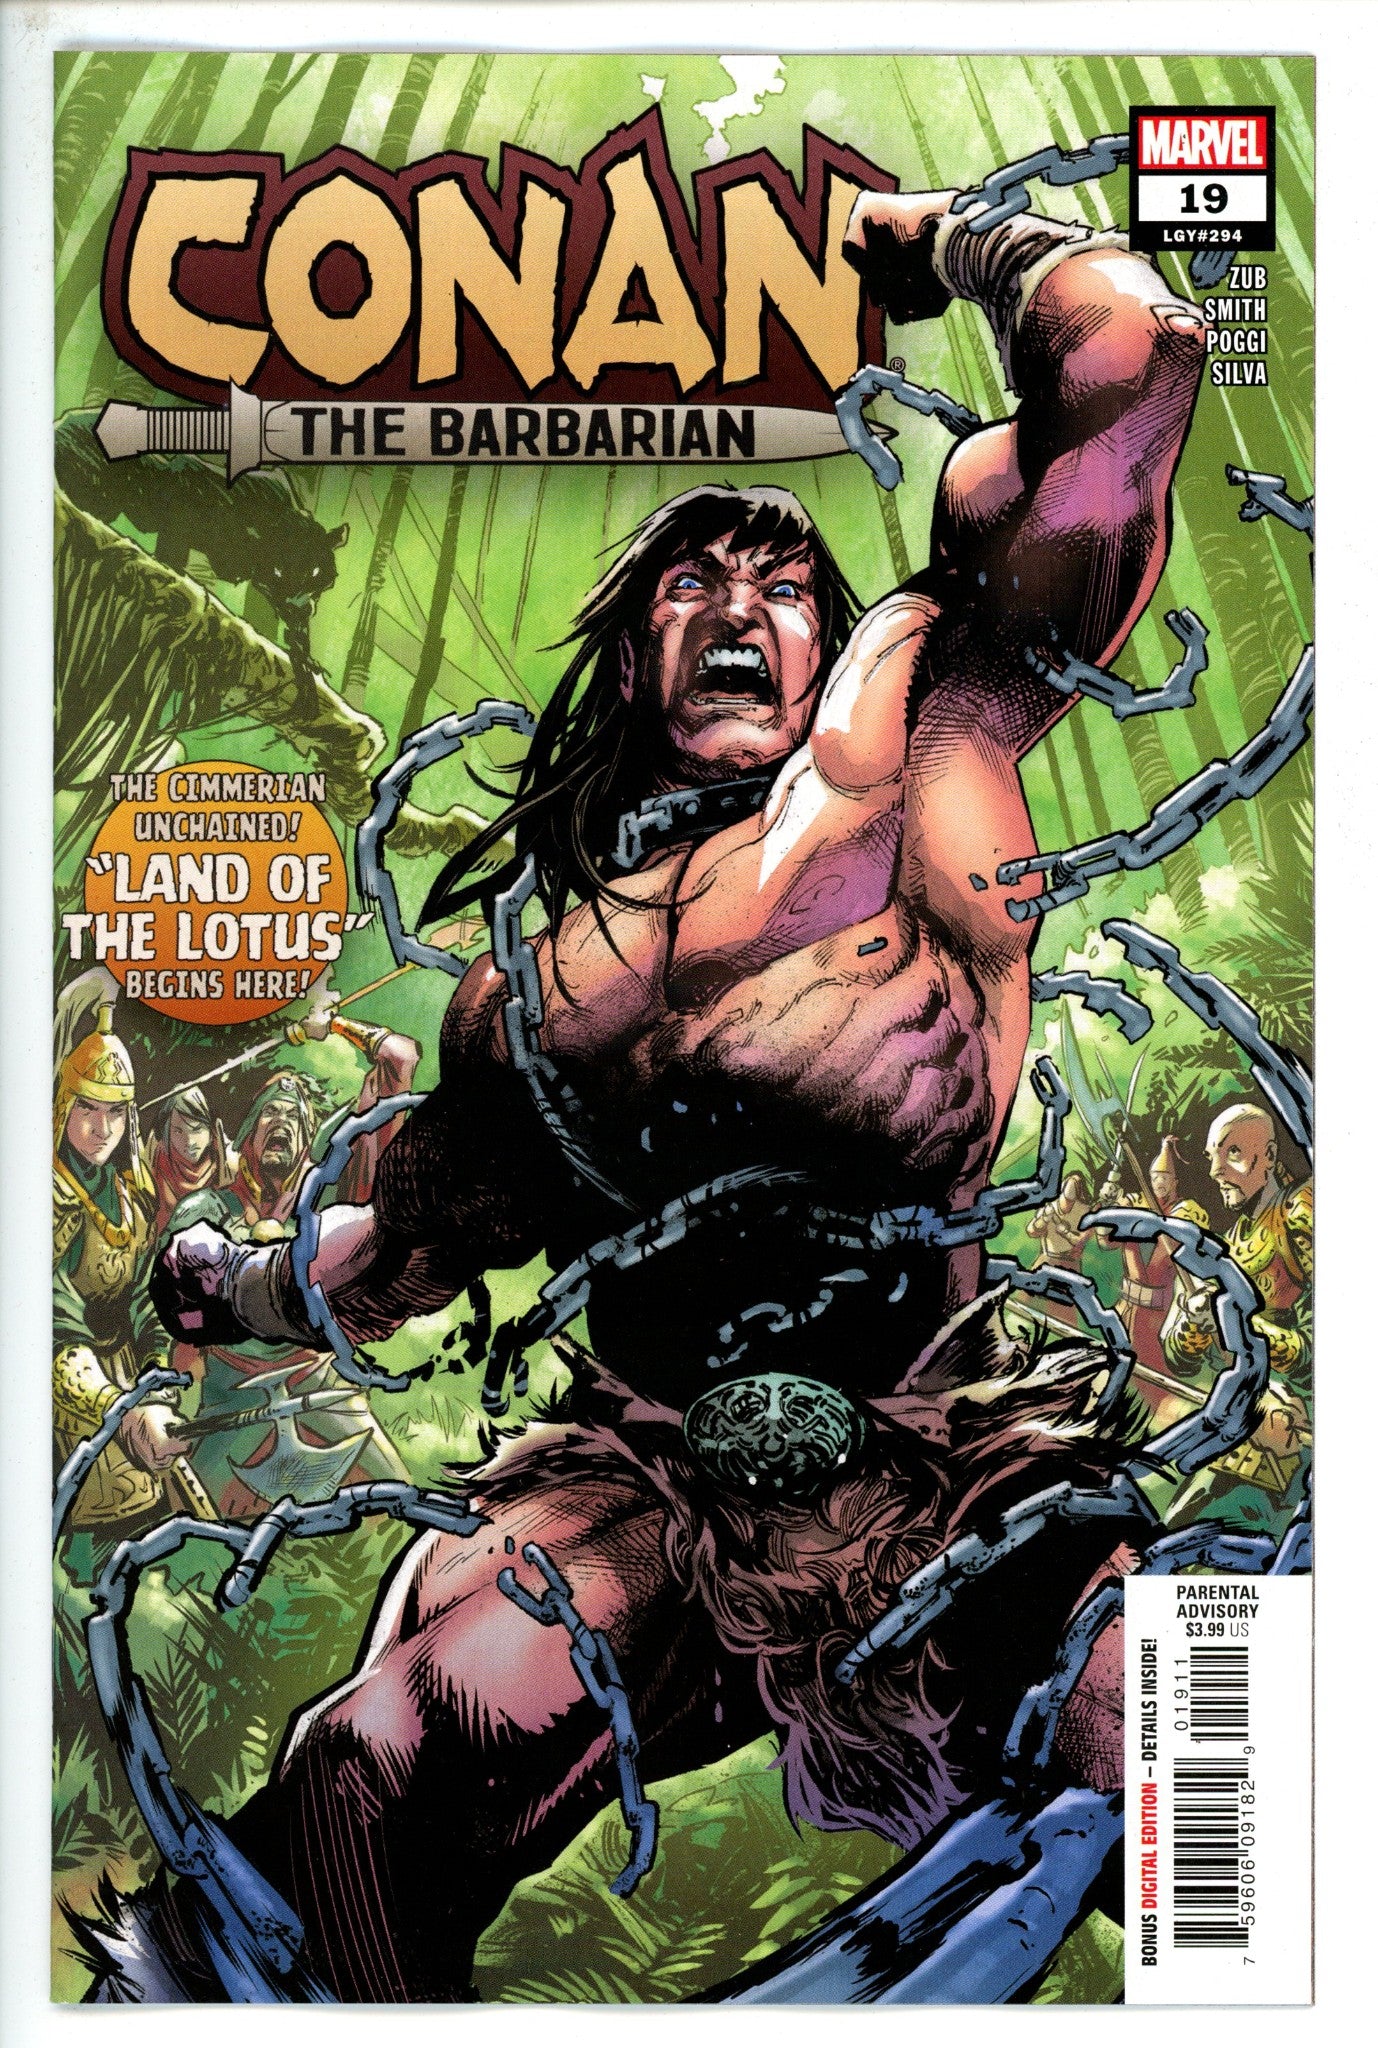 Conan the Barbarian Vol 3 19-Marvel-CaptCan Comics Inc